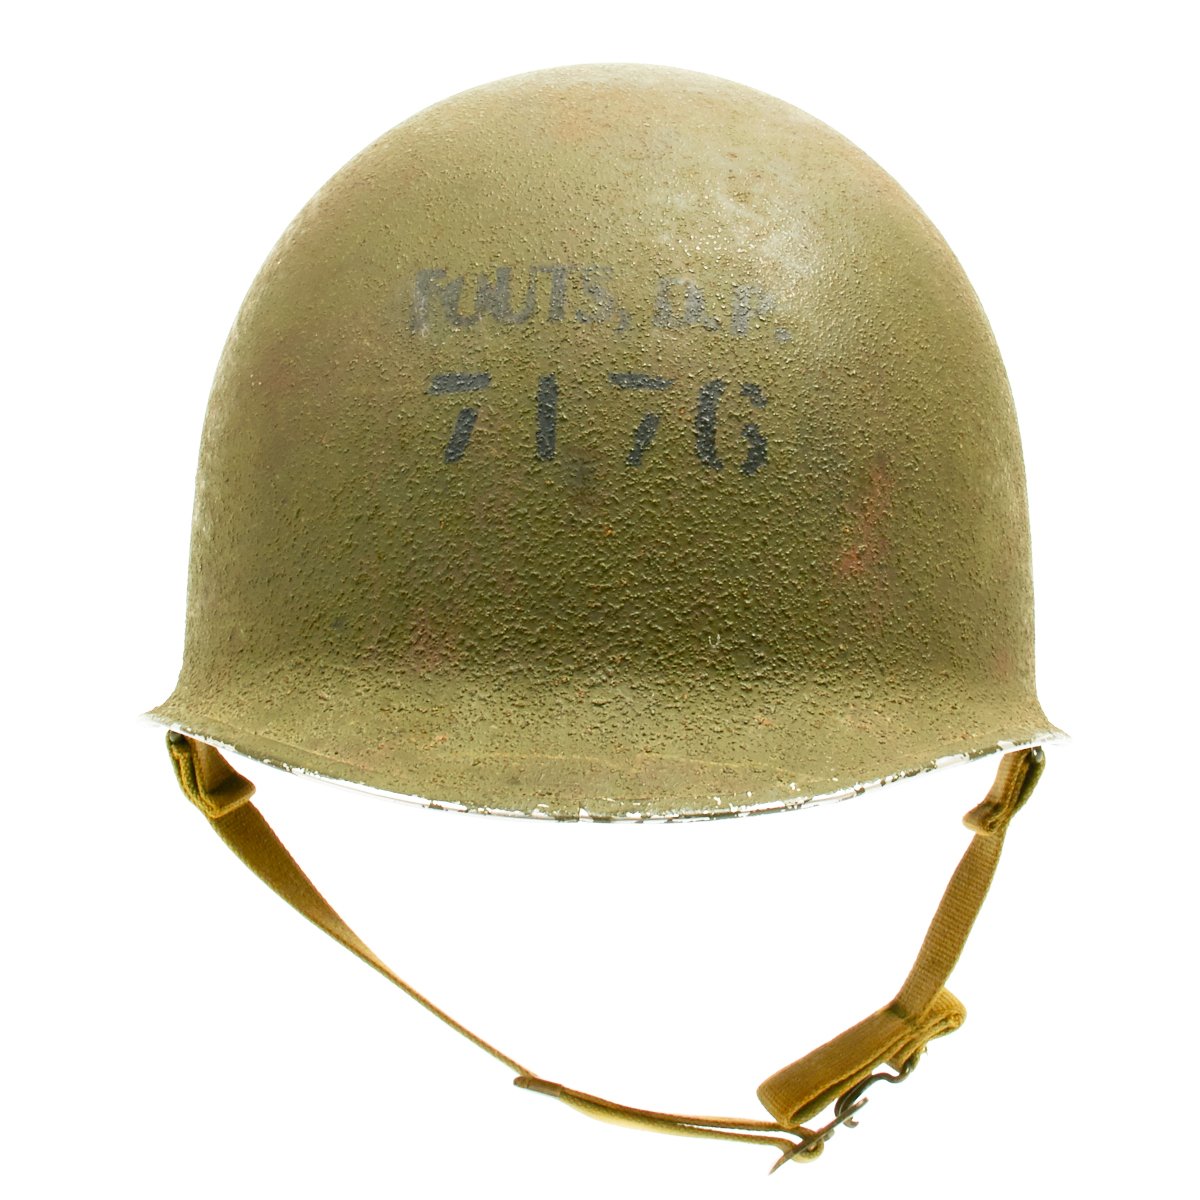 Ww2 M1 Helmet Markings